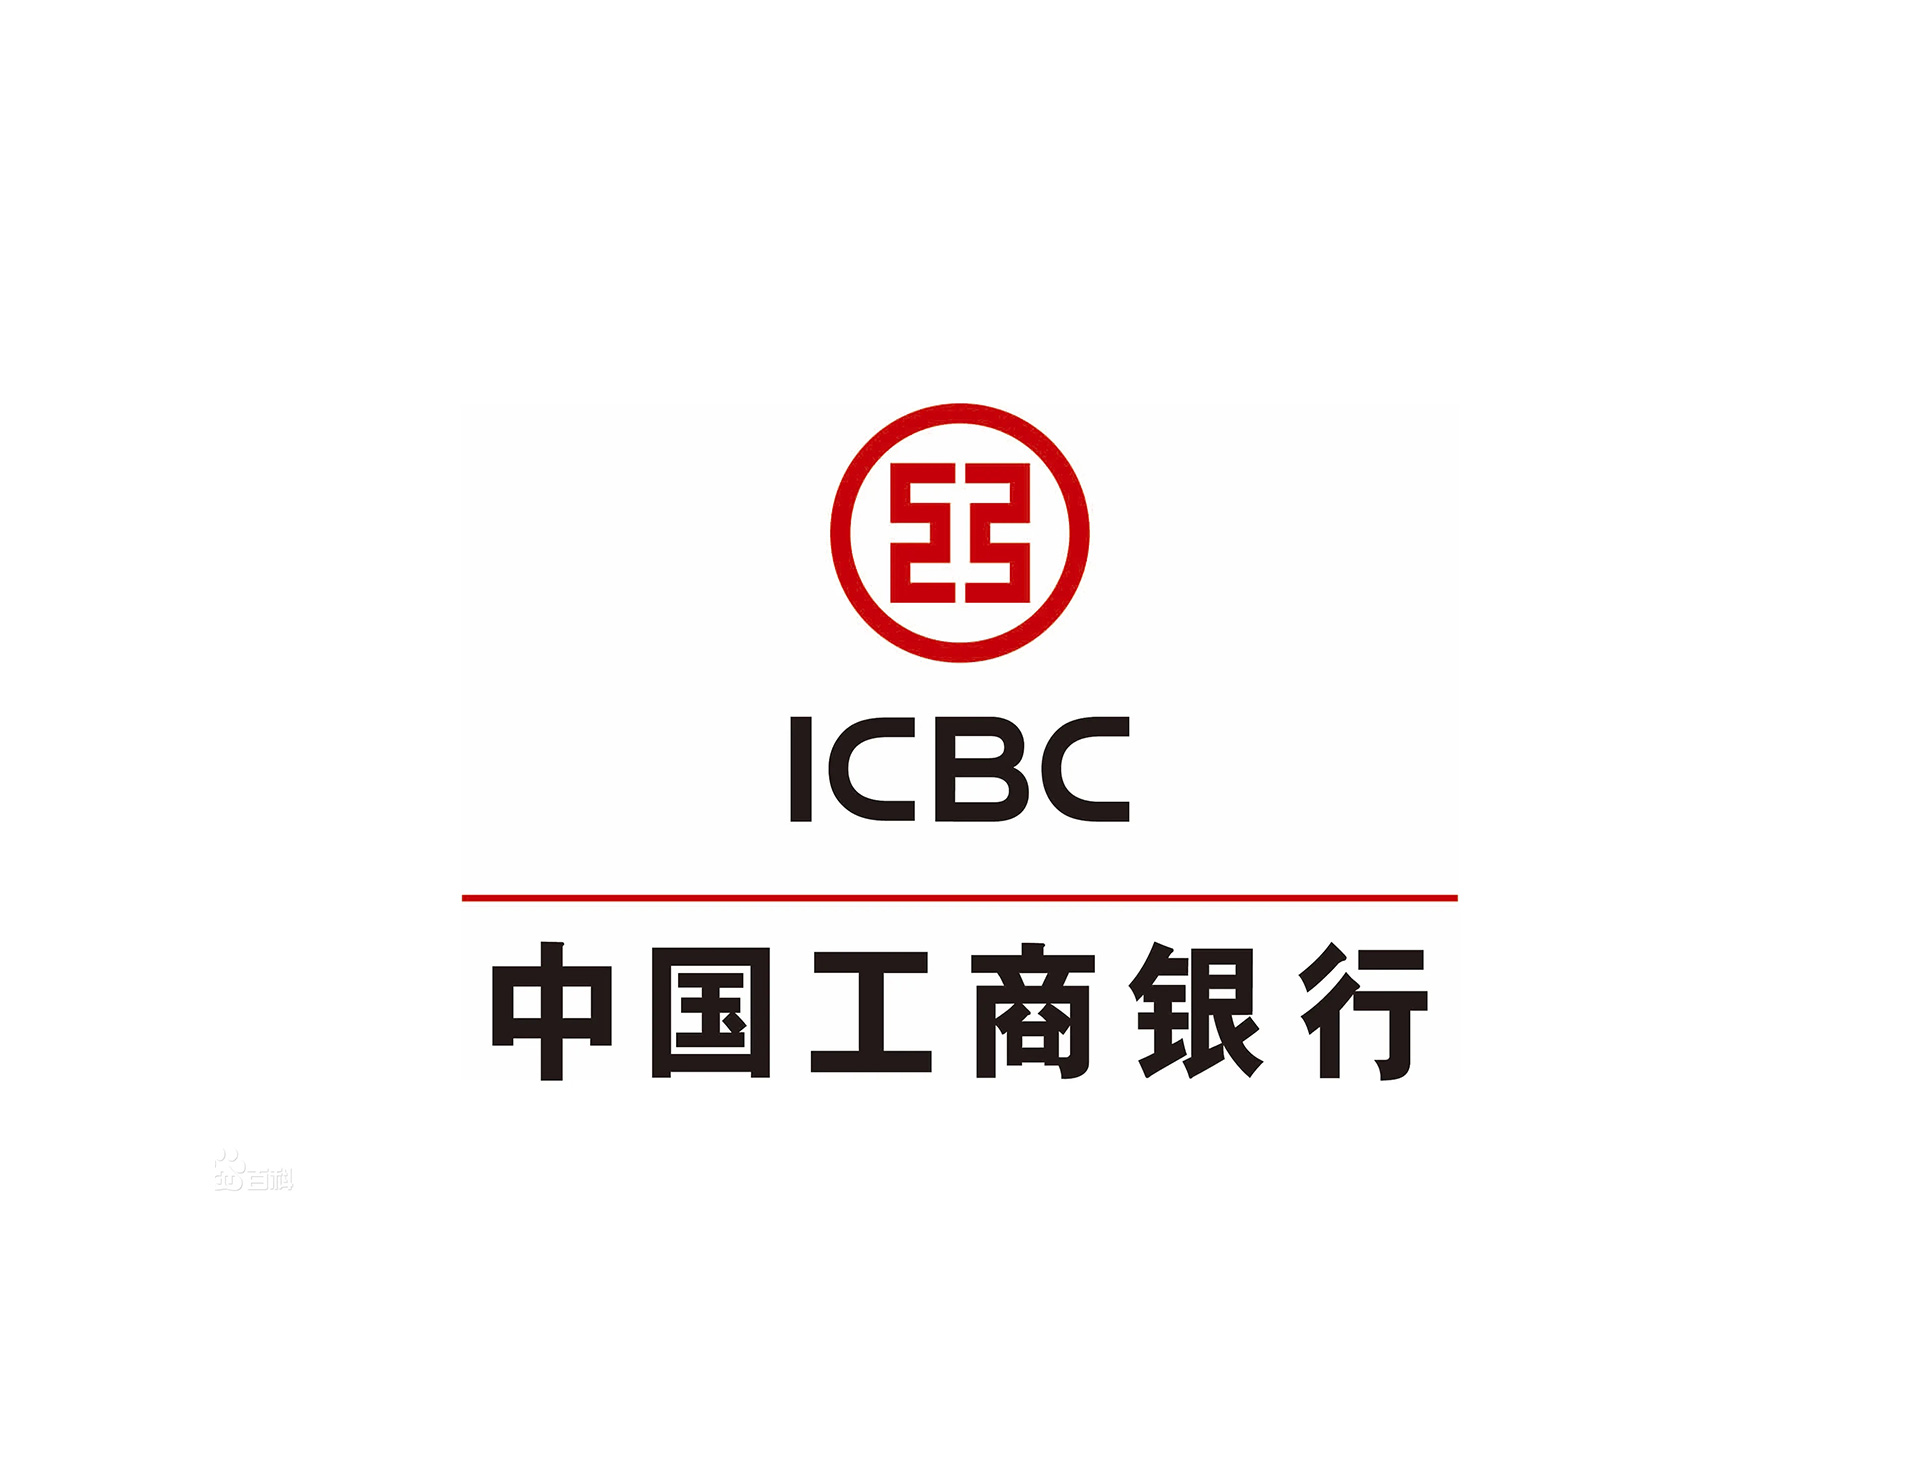 中国工商银行ICBC的标志设计含义是以镂空“工”字为行徽图案体现国家专业银行的特征